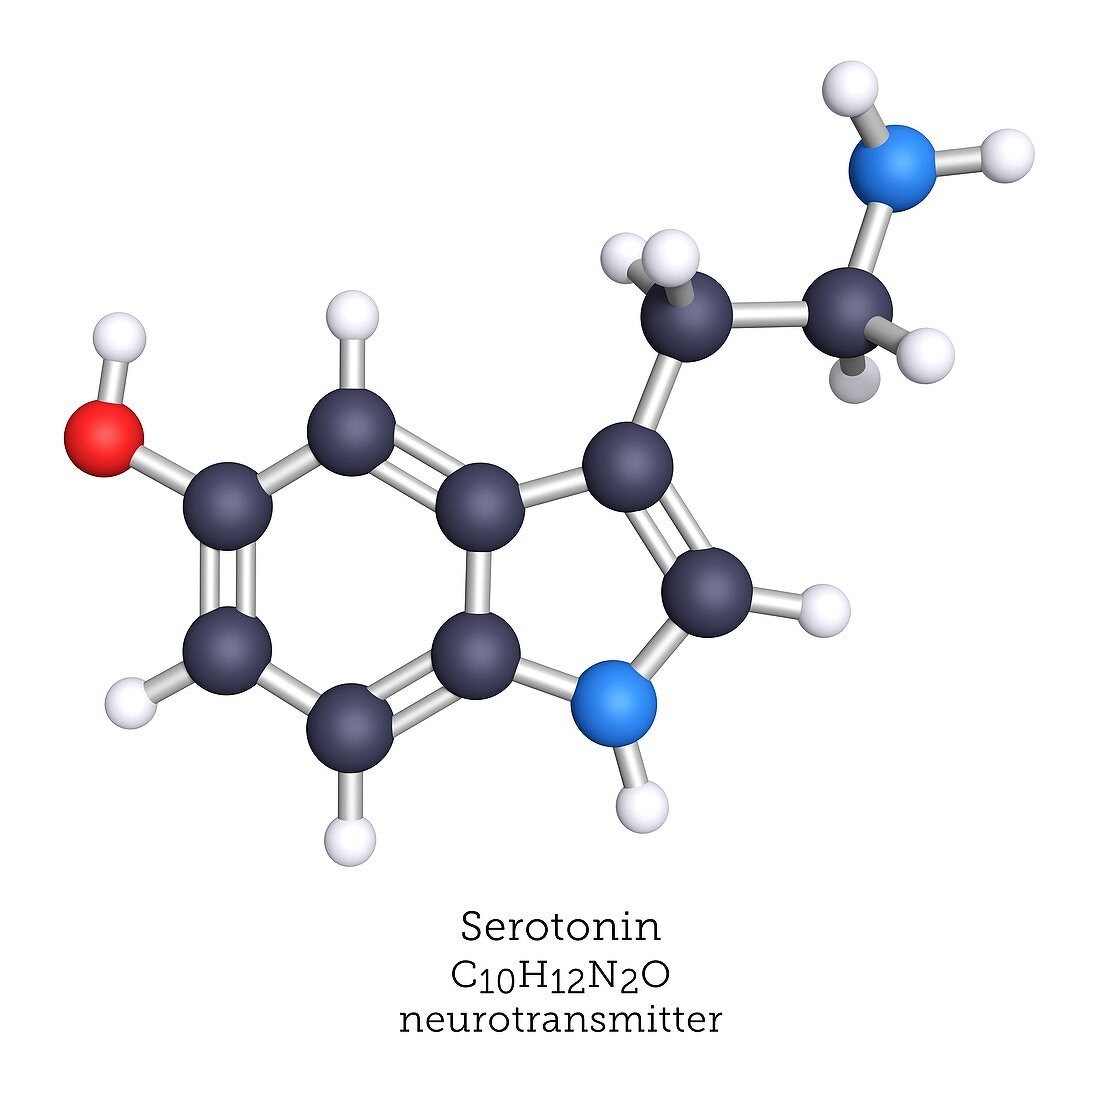 Serotonin neurotransmitter, molecular model